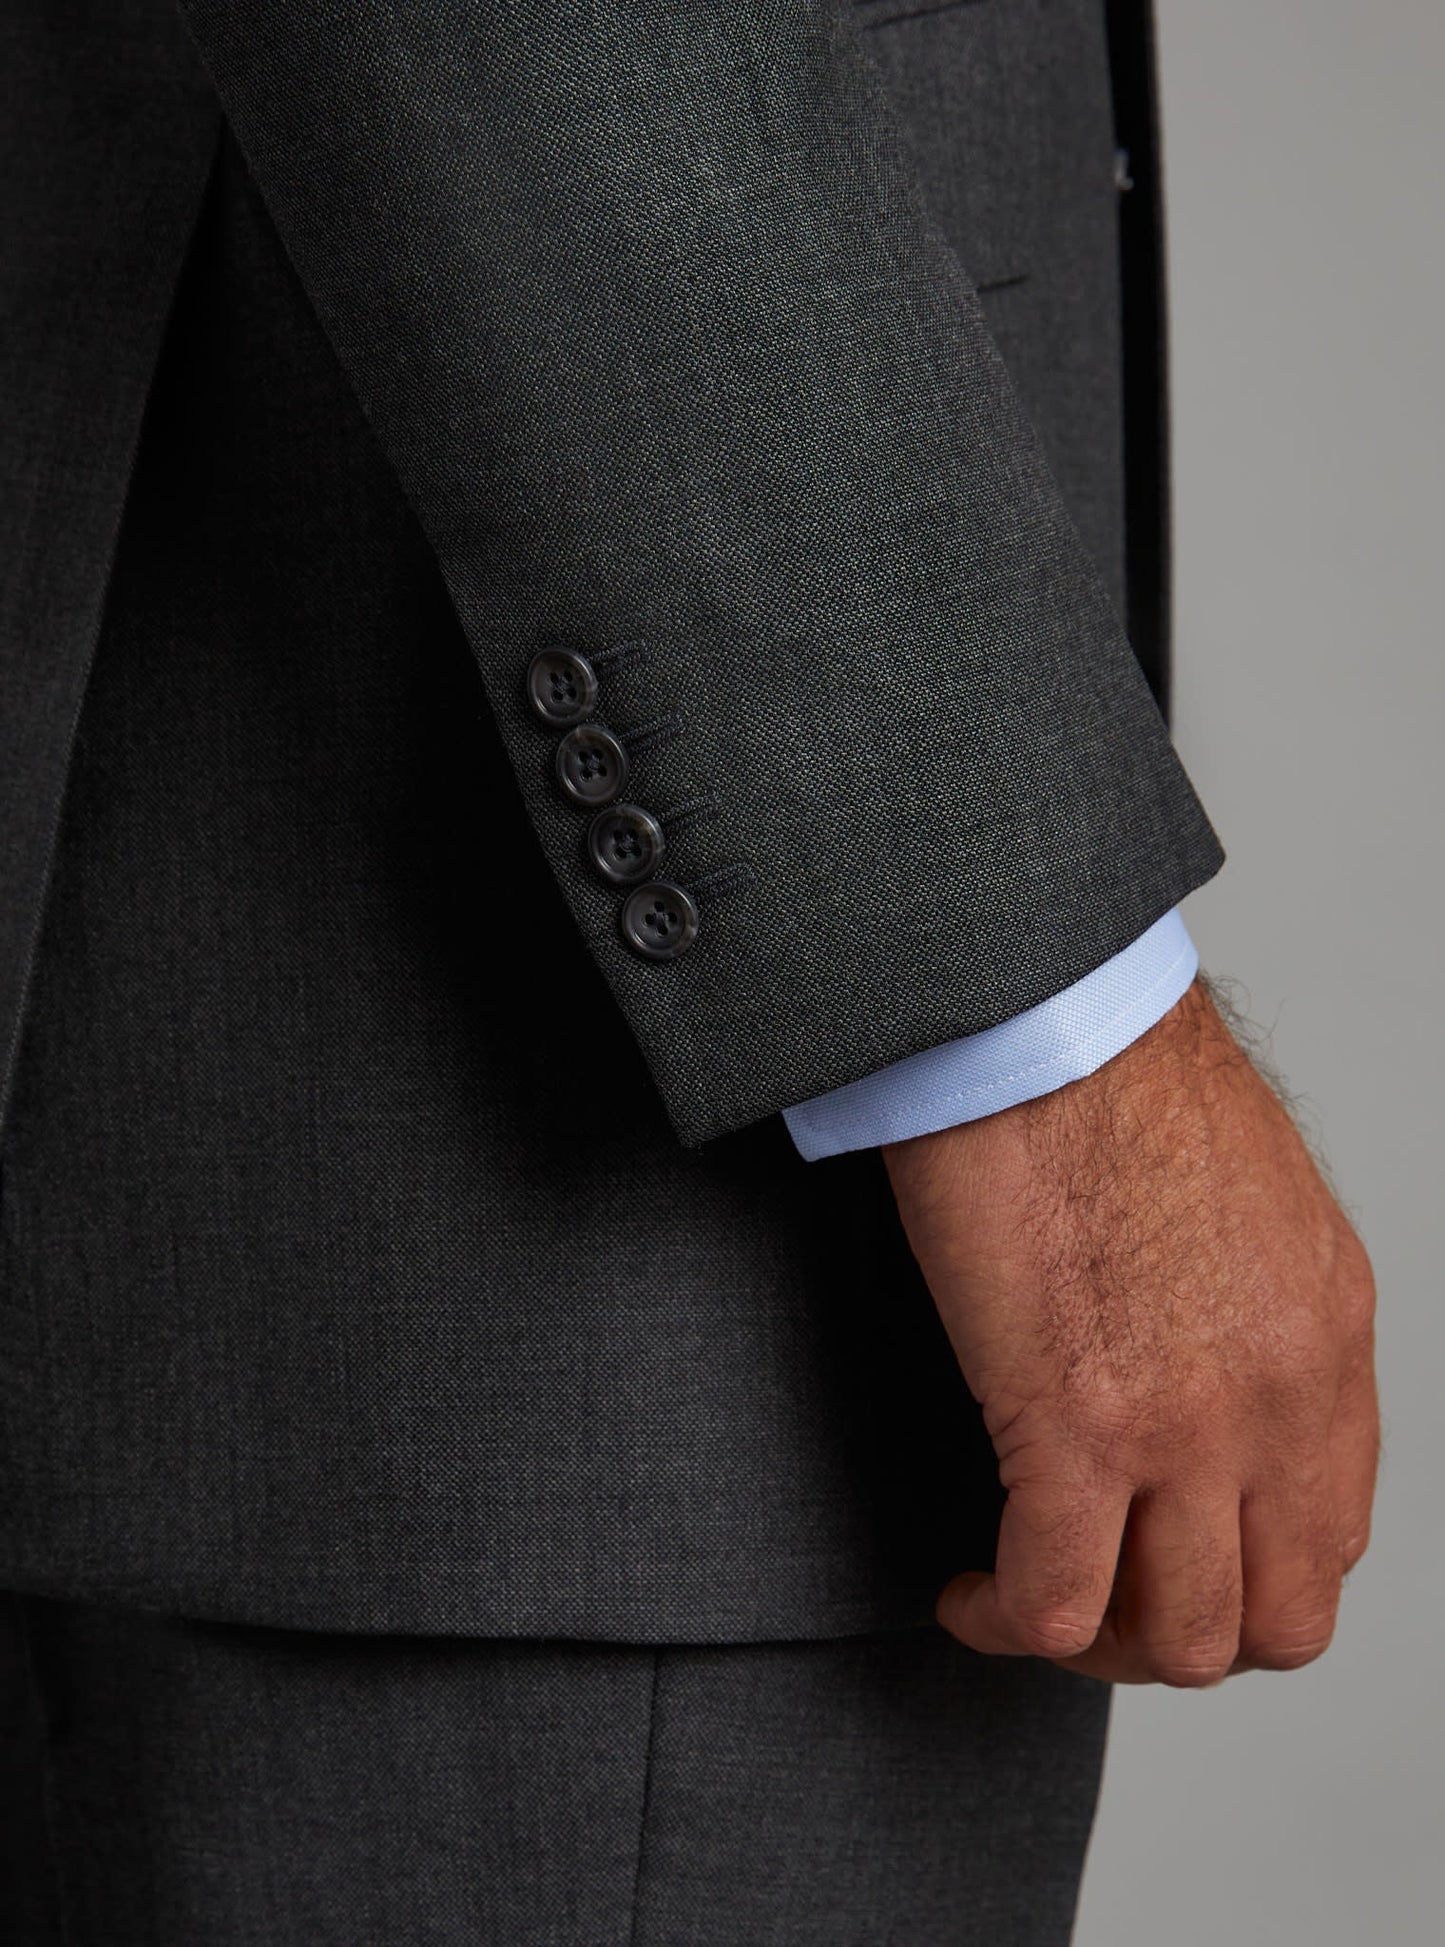 Eaton Suit - Plain Grey